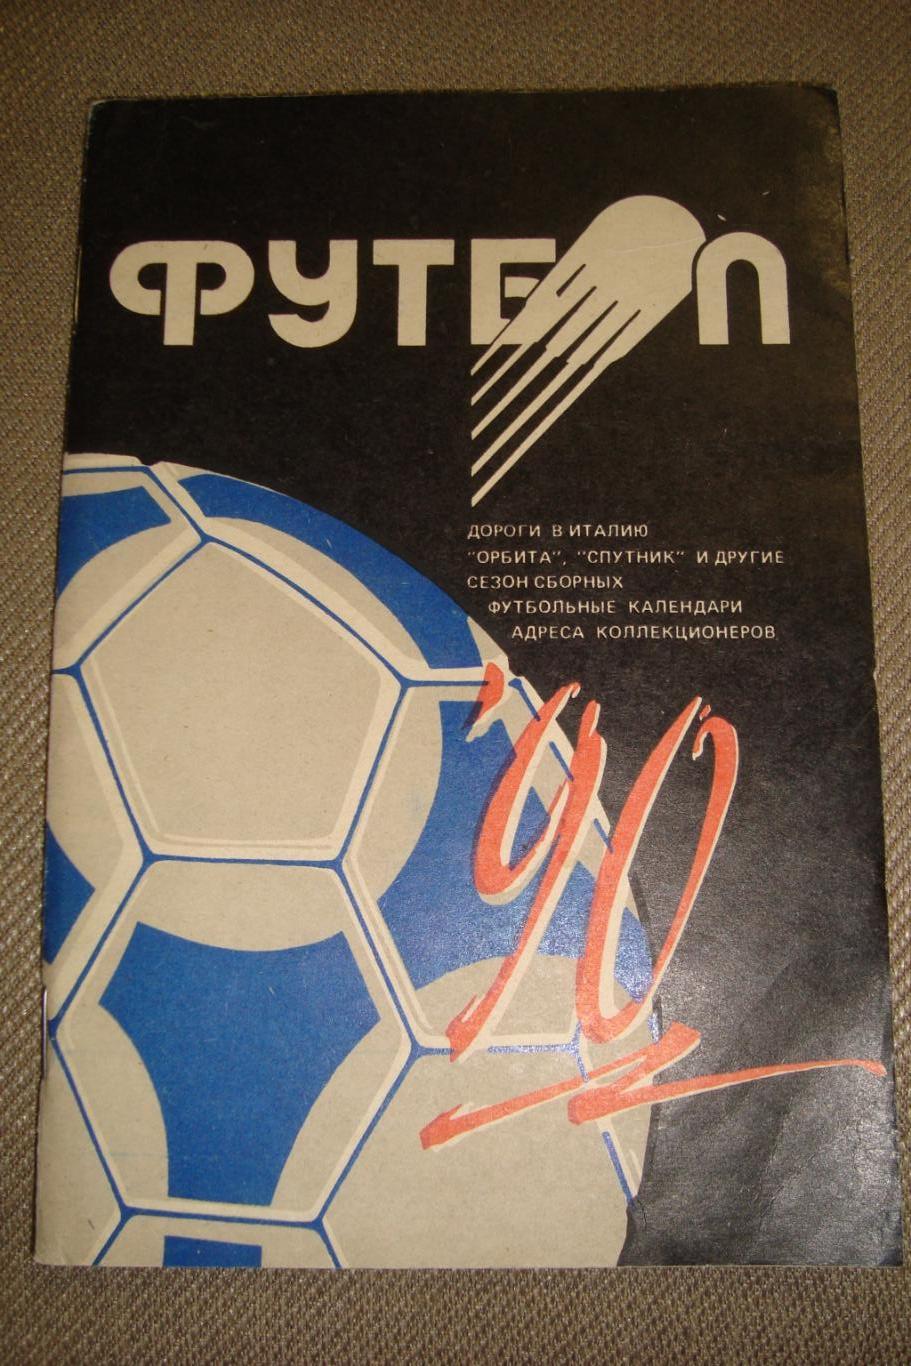 Справочник - календарь Футбол 1990. Изд-во Полымя, Минск. 1990 год.